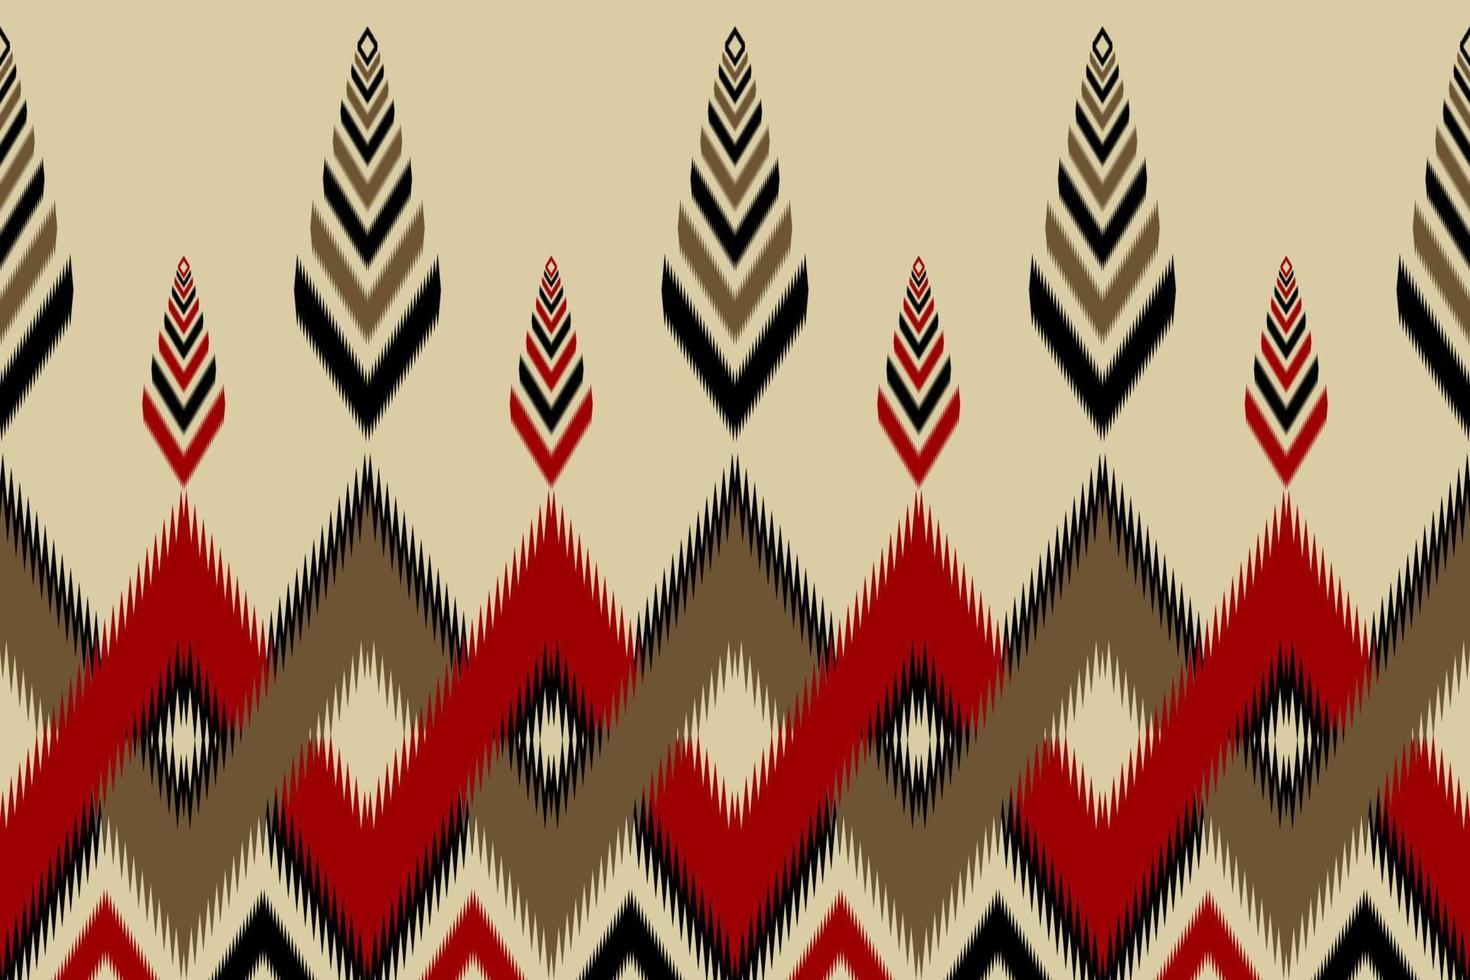 estilo nativo ikat. padrão étnico tradicional. design para plano de fundo,ilustração,textura,tecido,batik,vestuário,embrulho,papel de parede,tapete,bordado vetor